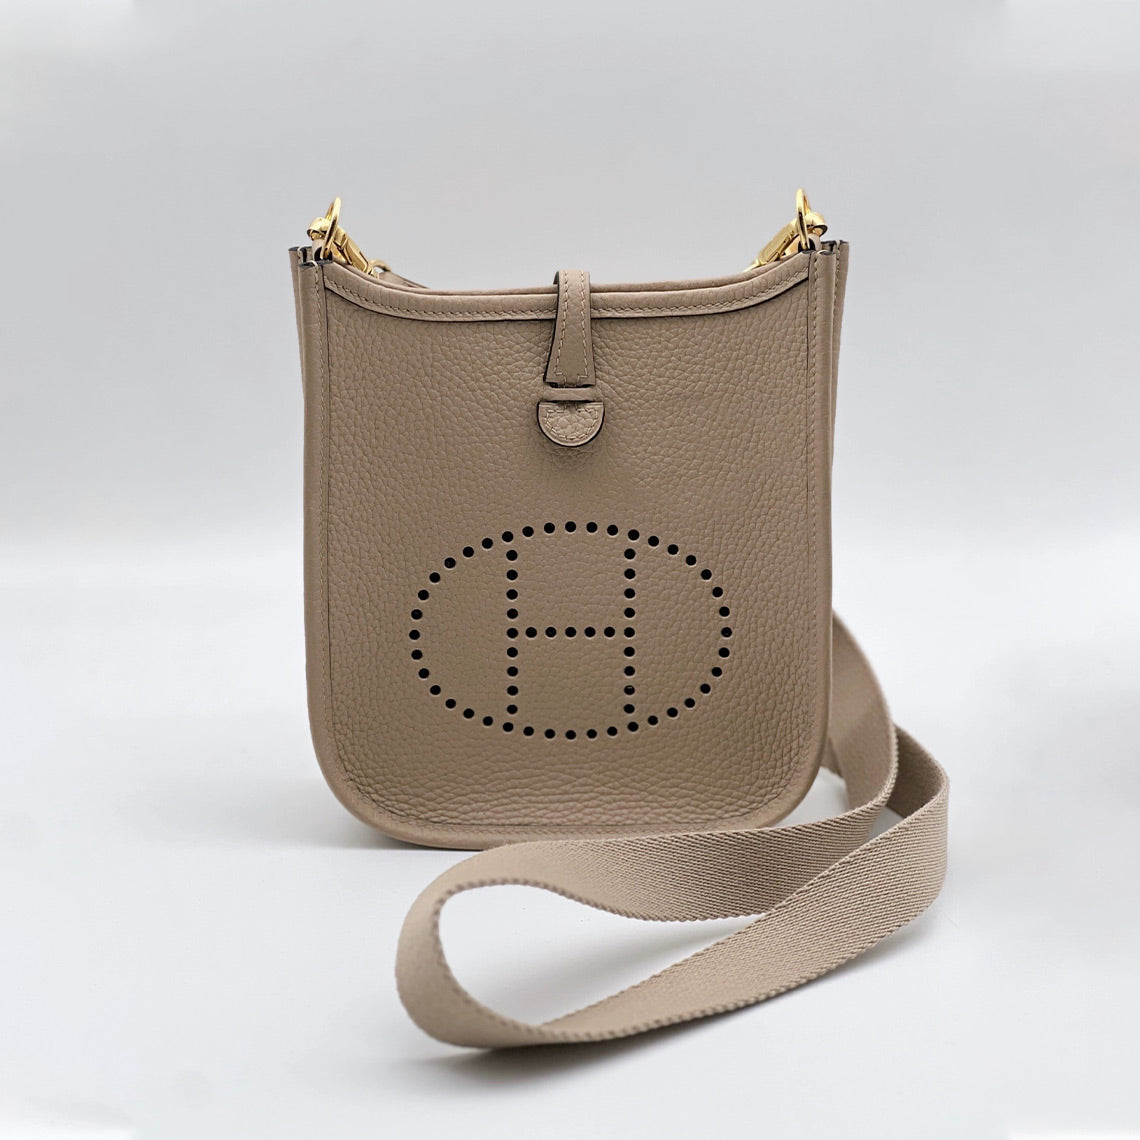 DIY Hermes mini evelyne bag kit | How to make a leather bag POPSEWING®